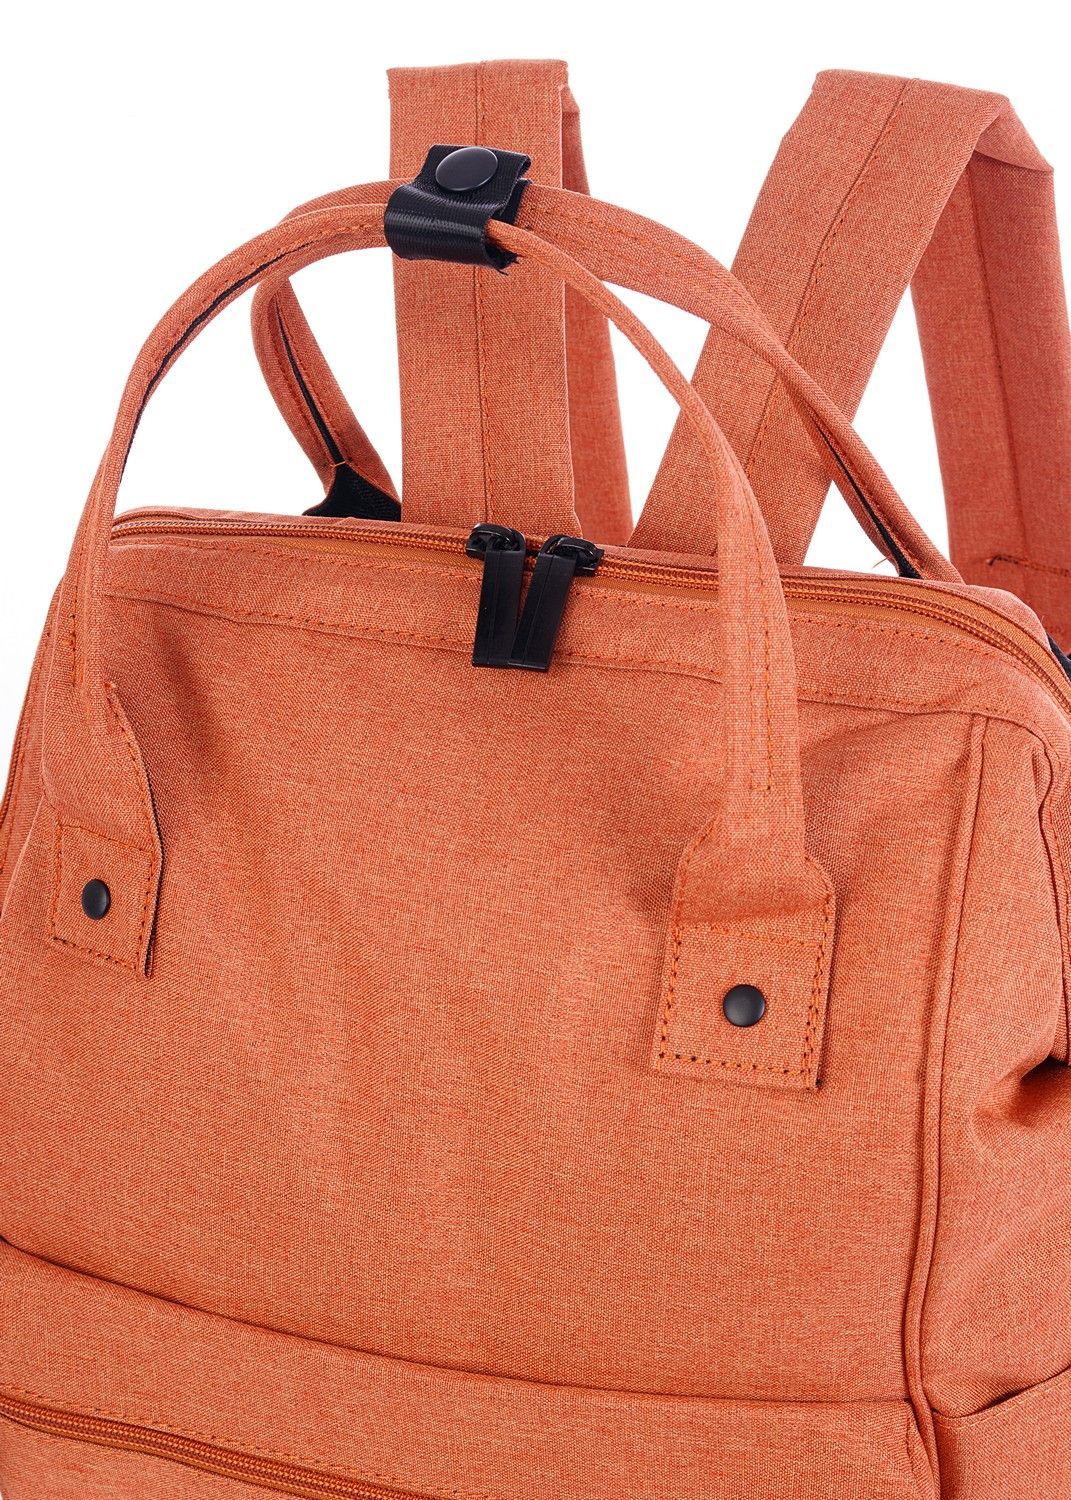 Рюкзак женский городской, оранжевый однотонный, со стандартными лямками, объем 18 л